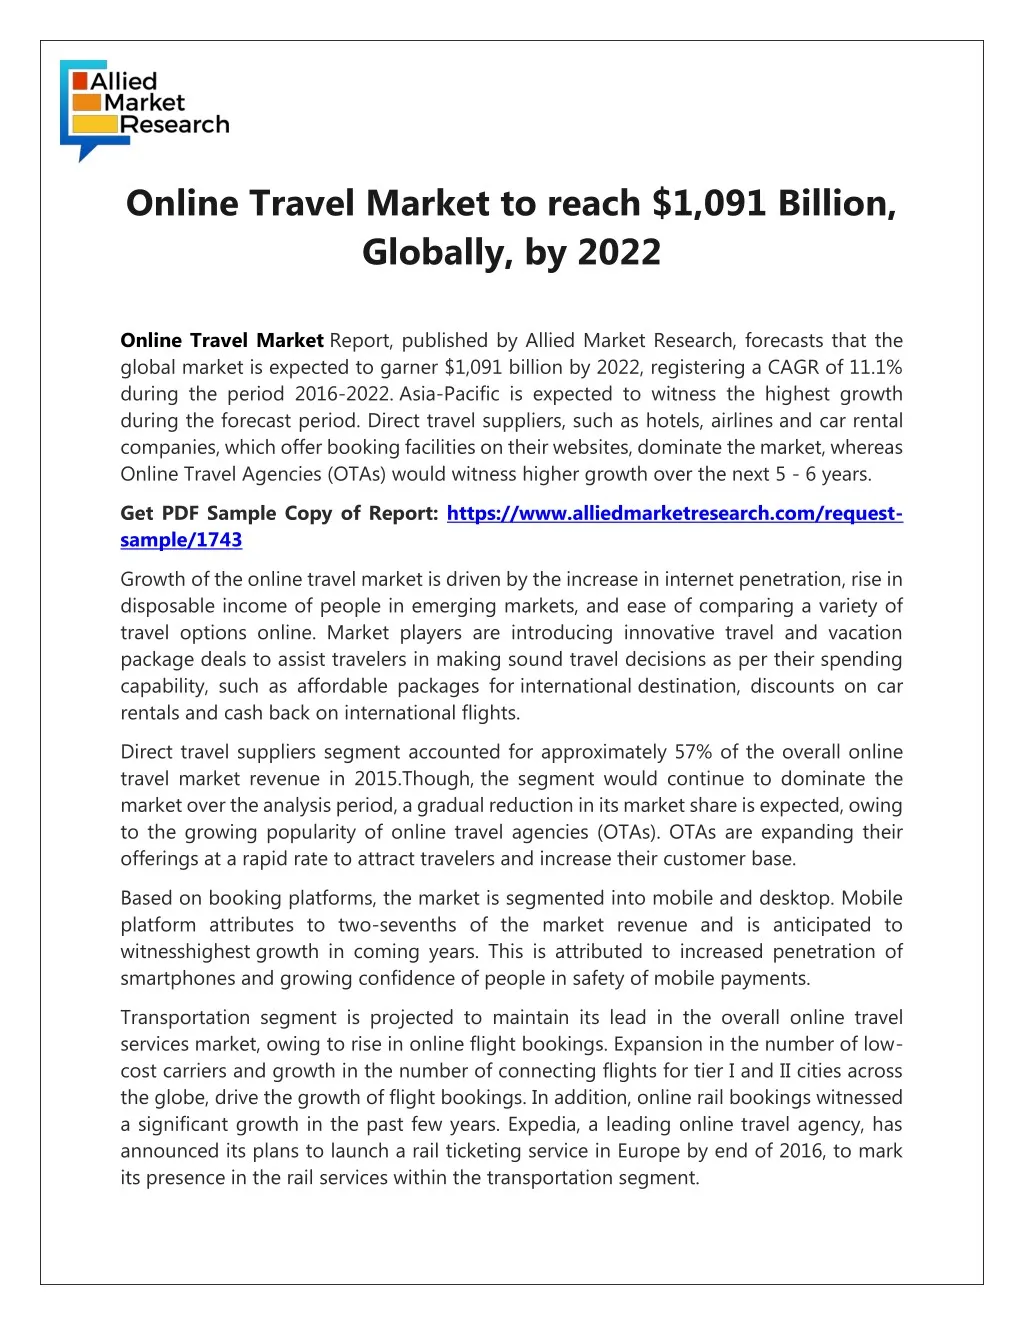 online travel market to reach 1 091 billion